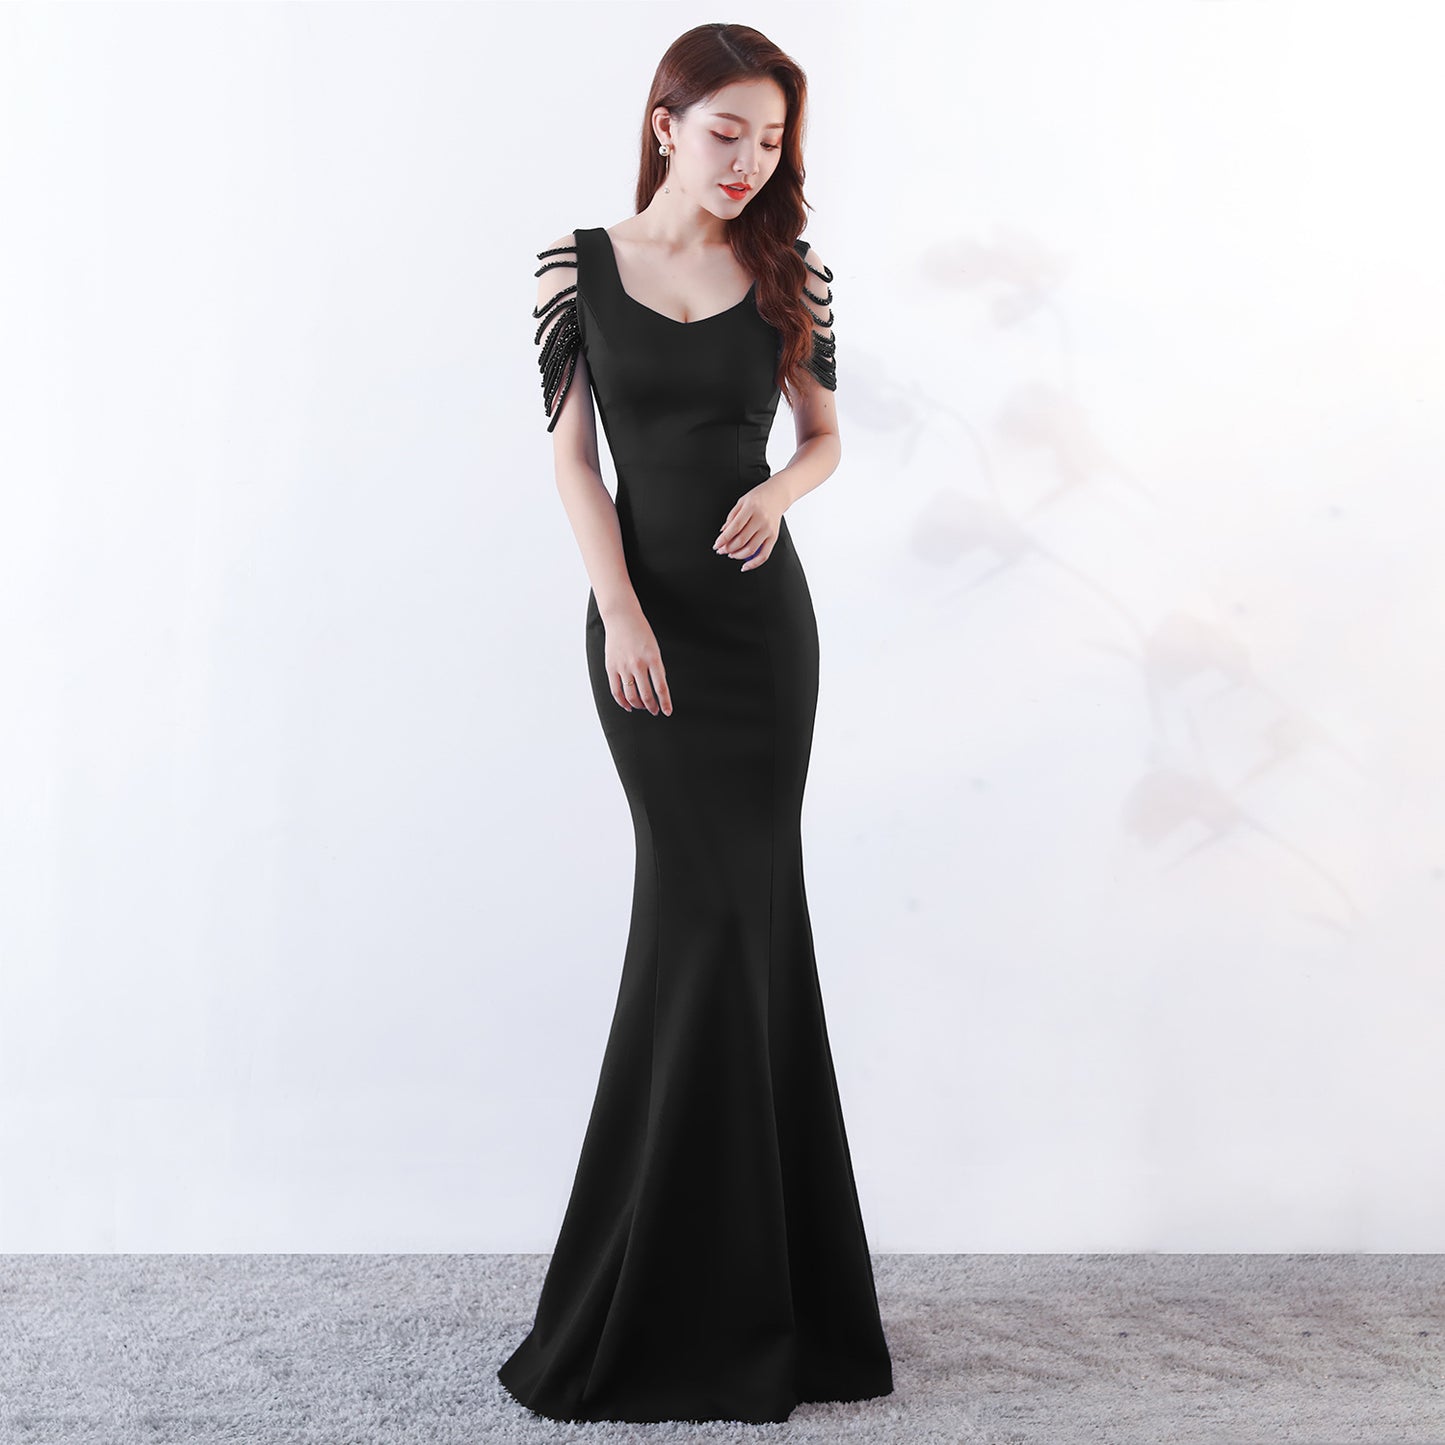 Dress skirt fishtail dress evening dress